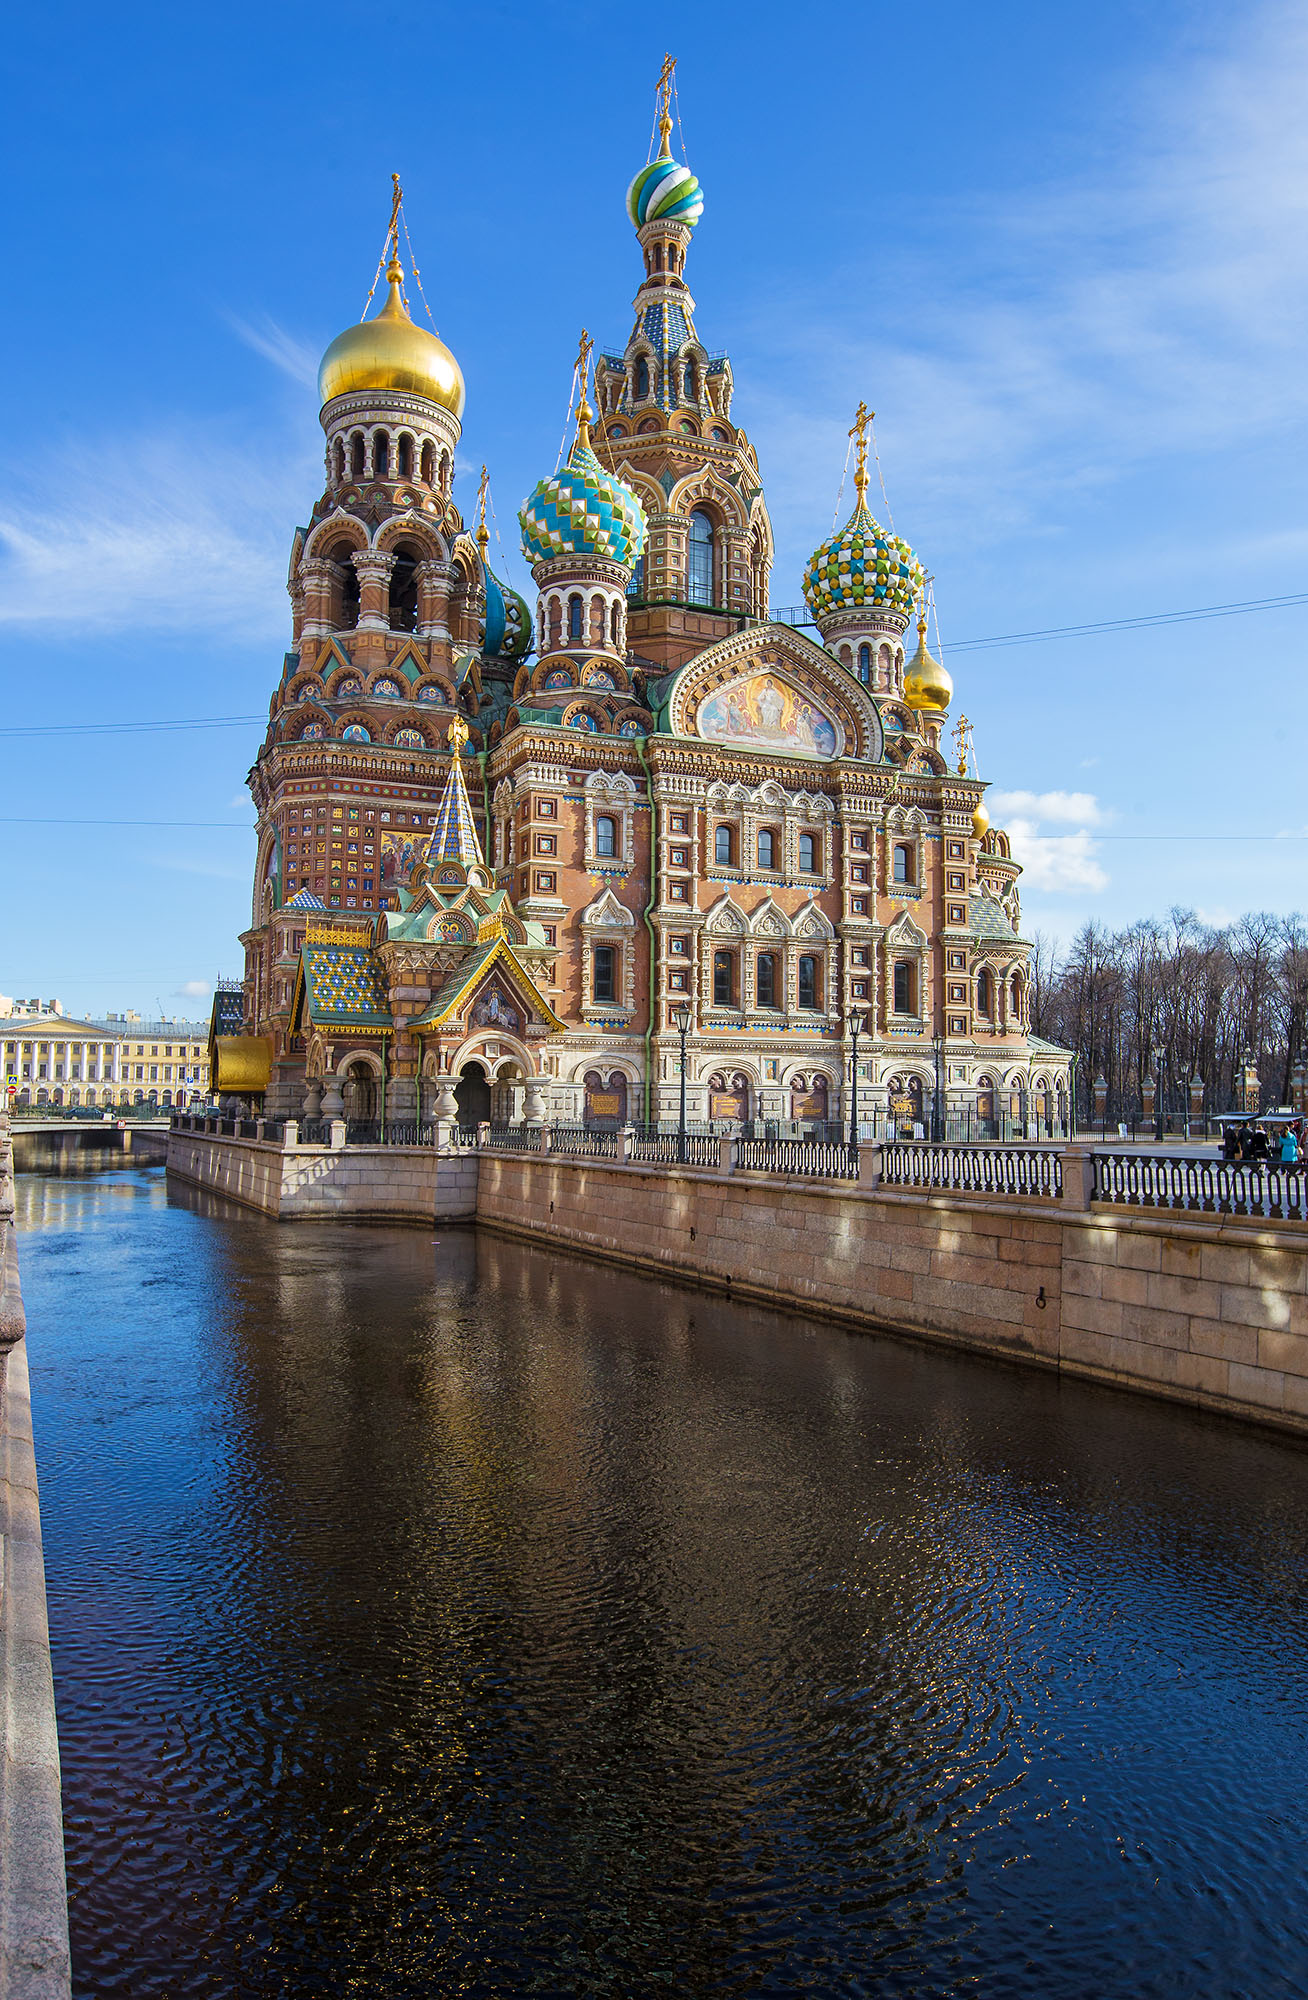 St. Petersburg, Russia – Daniel J Allen | Photography.